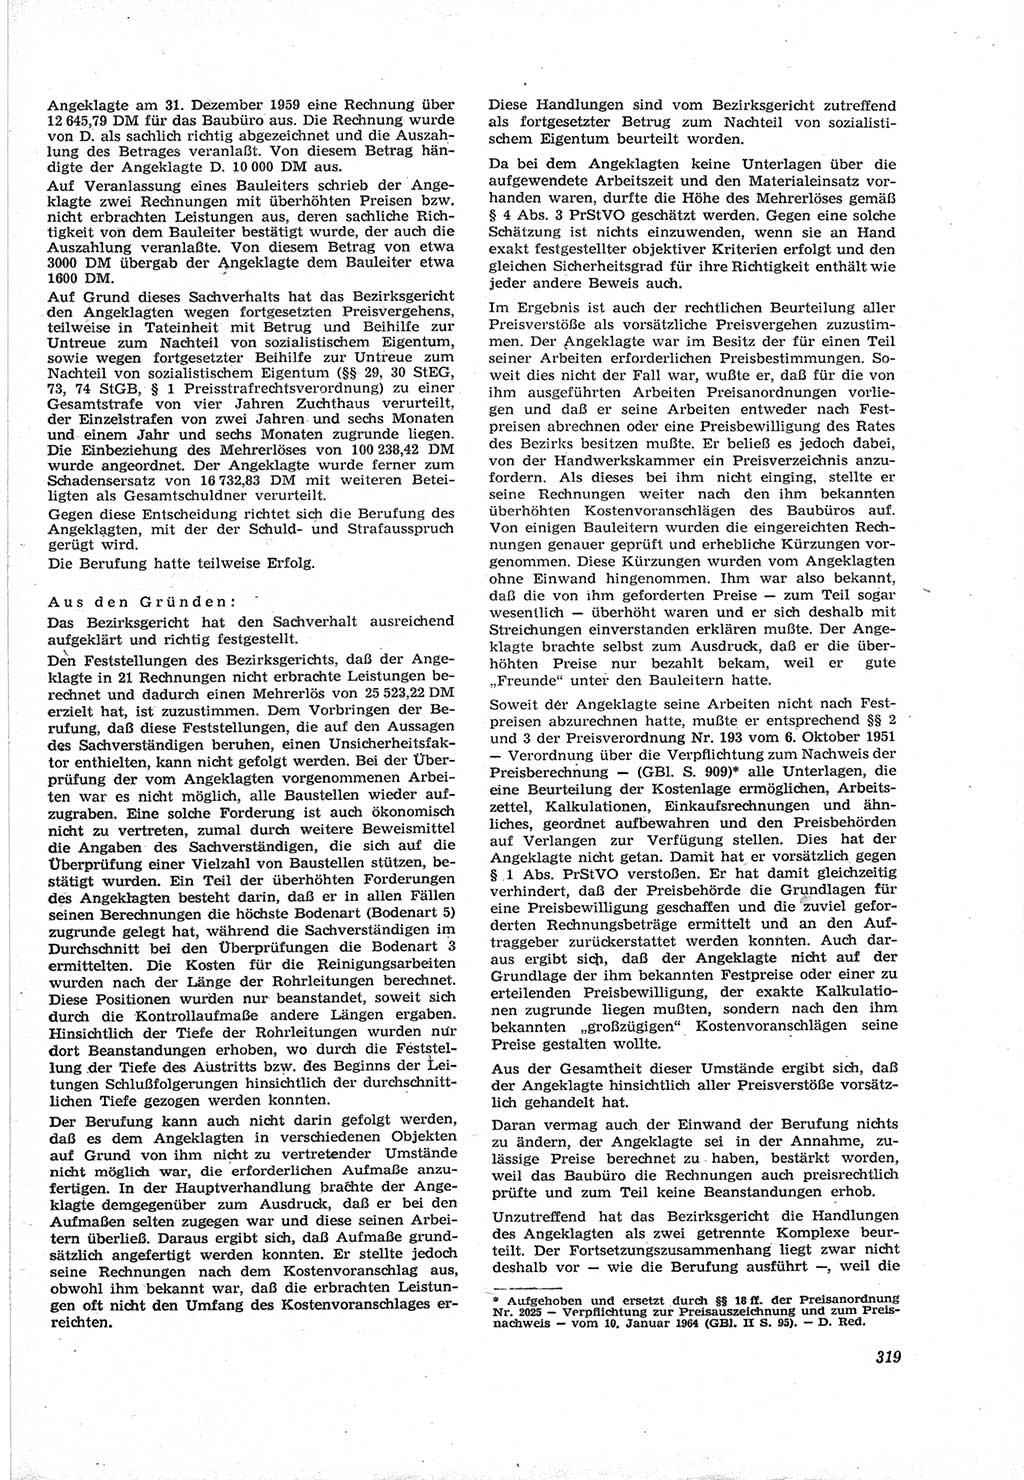 Neue Justiz (NJ), Zeitschrift für Recht und Rechtswissenschaft [Deutsche Demokratische Republik (DDR)], 18. Jahrgang 1964, Seite 319 (NJ DDR 1964, S. 319)